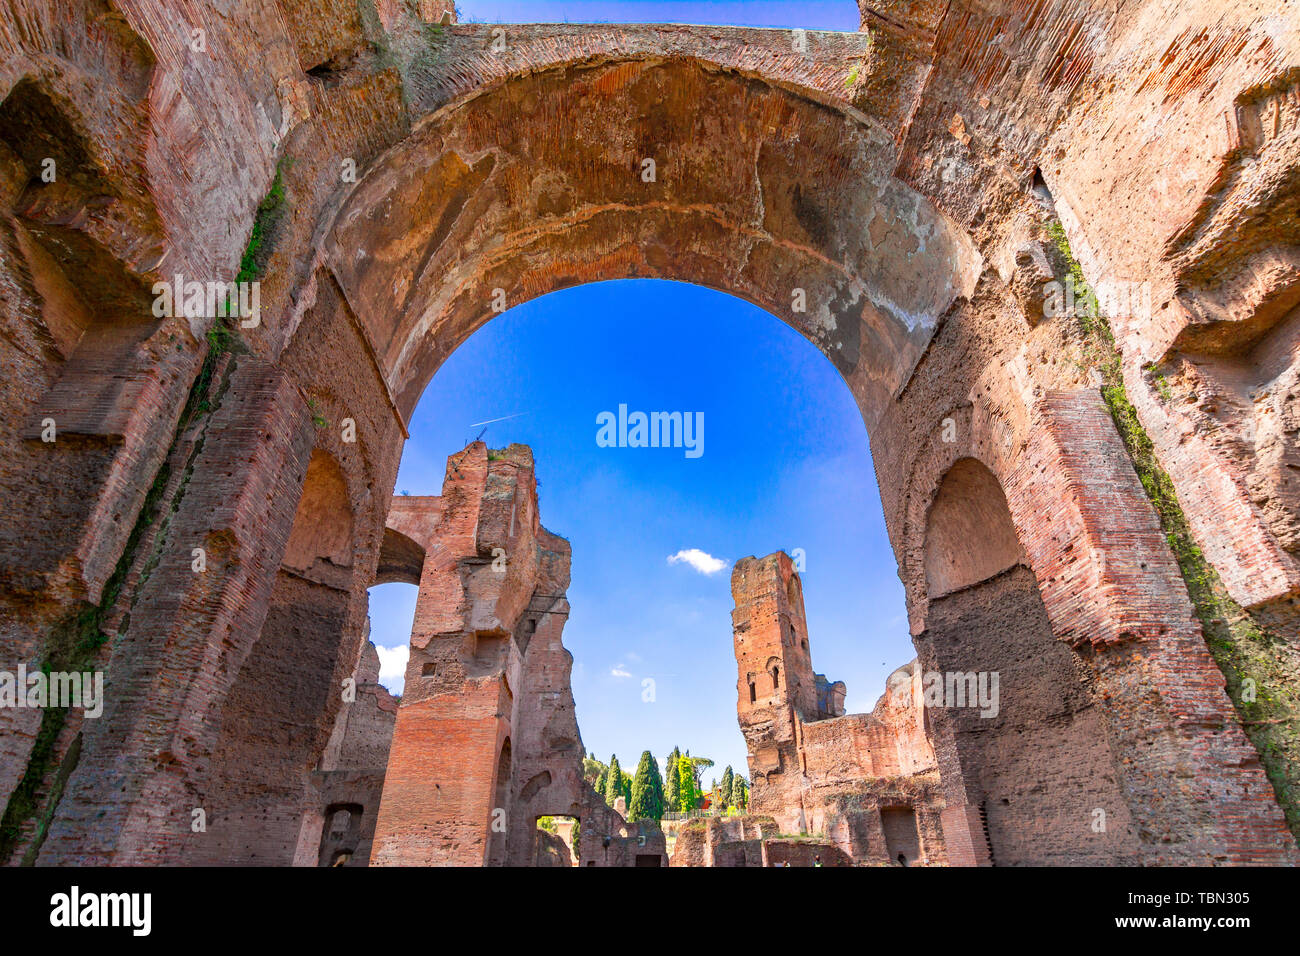 Terme di Caracalla o las Termas de Caracalla en Roma, Italia, fue la segunda más grande de la ciudad romana, baños públicos o thermae Foto de stock